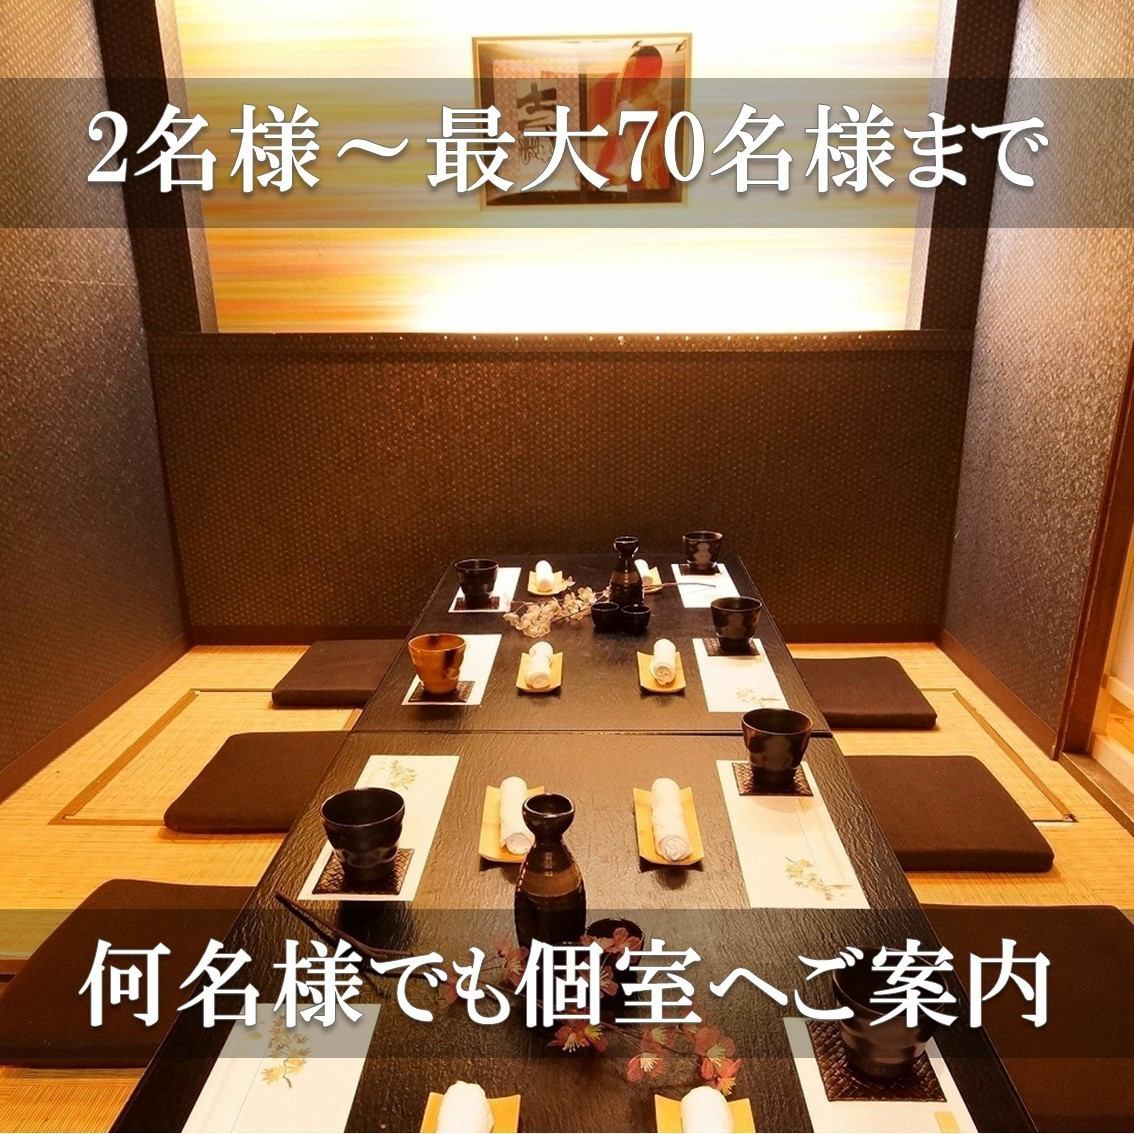 [宴会用!!] 座位时间不限!套餐3,500日元～